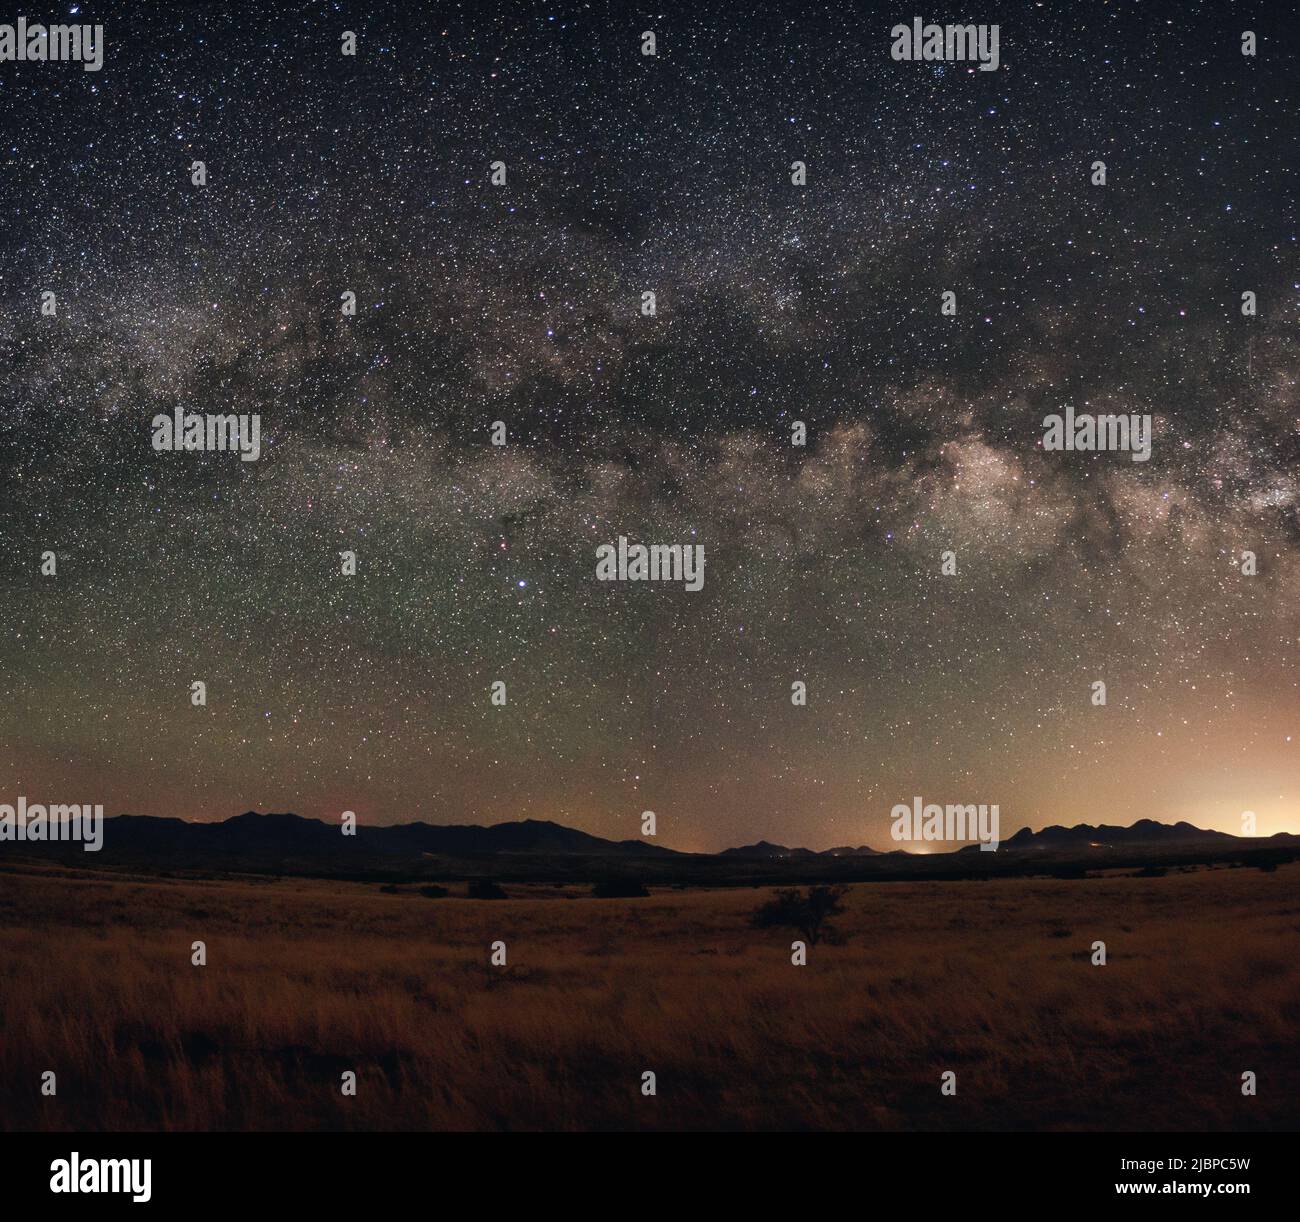 La galaxia de la Vía Láctea sobre el Valle del Imperio Sonoita en Arizona. Foto de stock